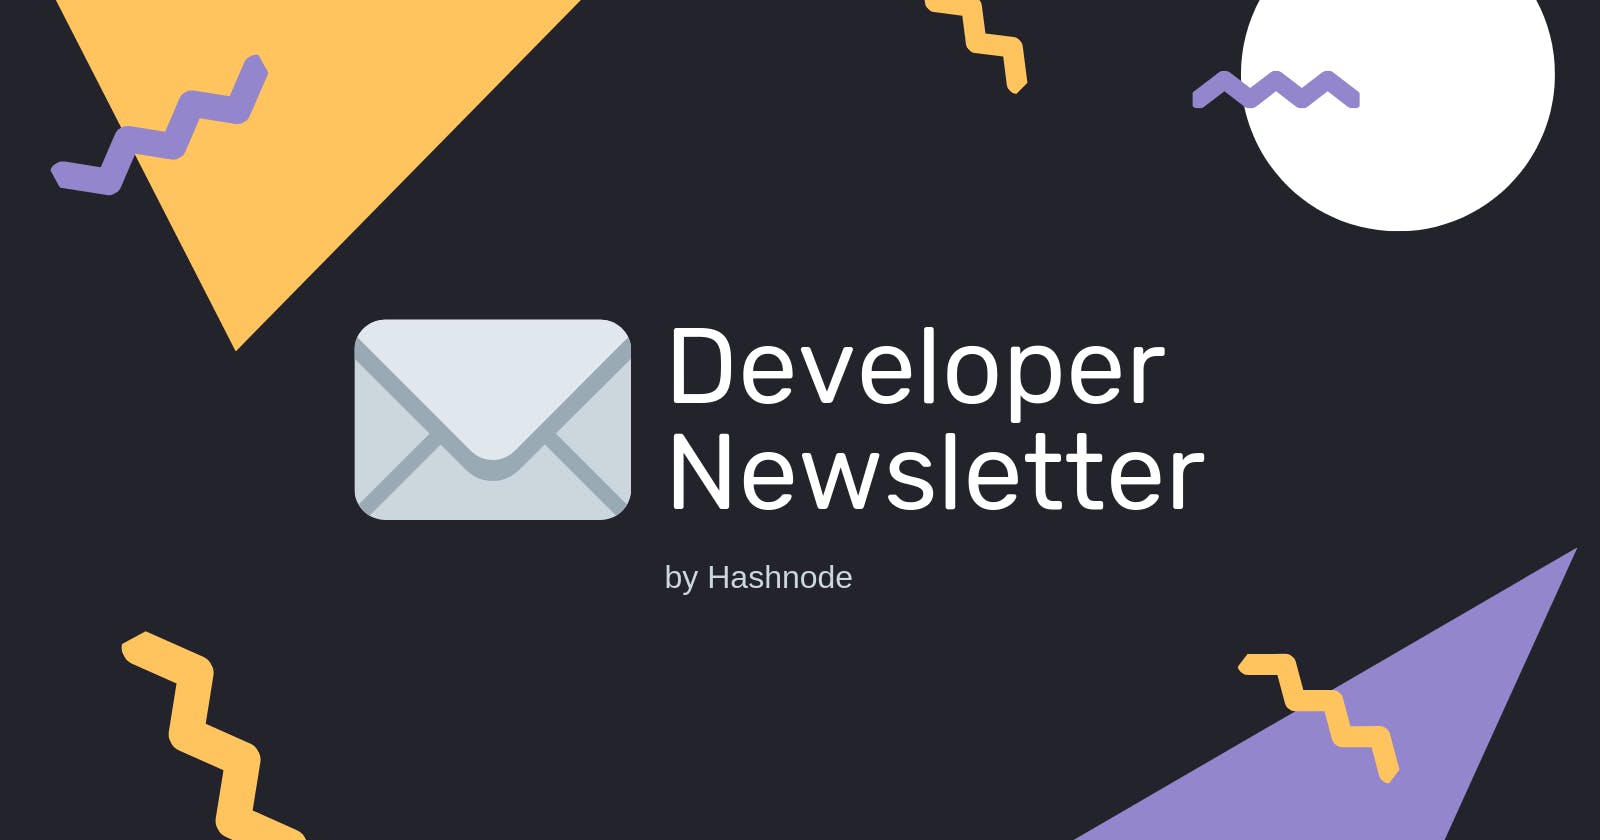 Links from this week's Developer Newsletter from Hashnode